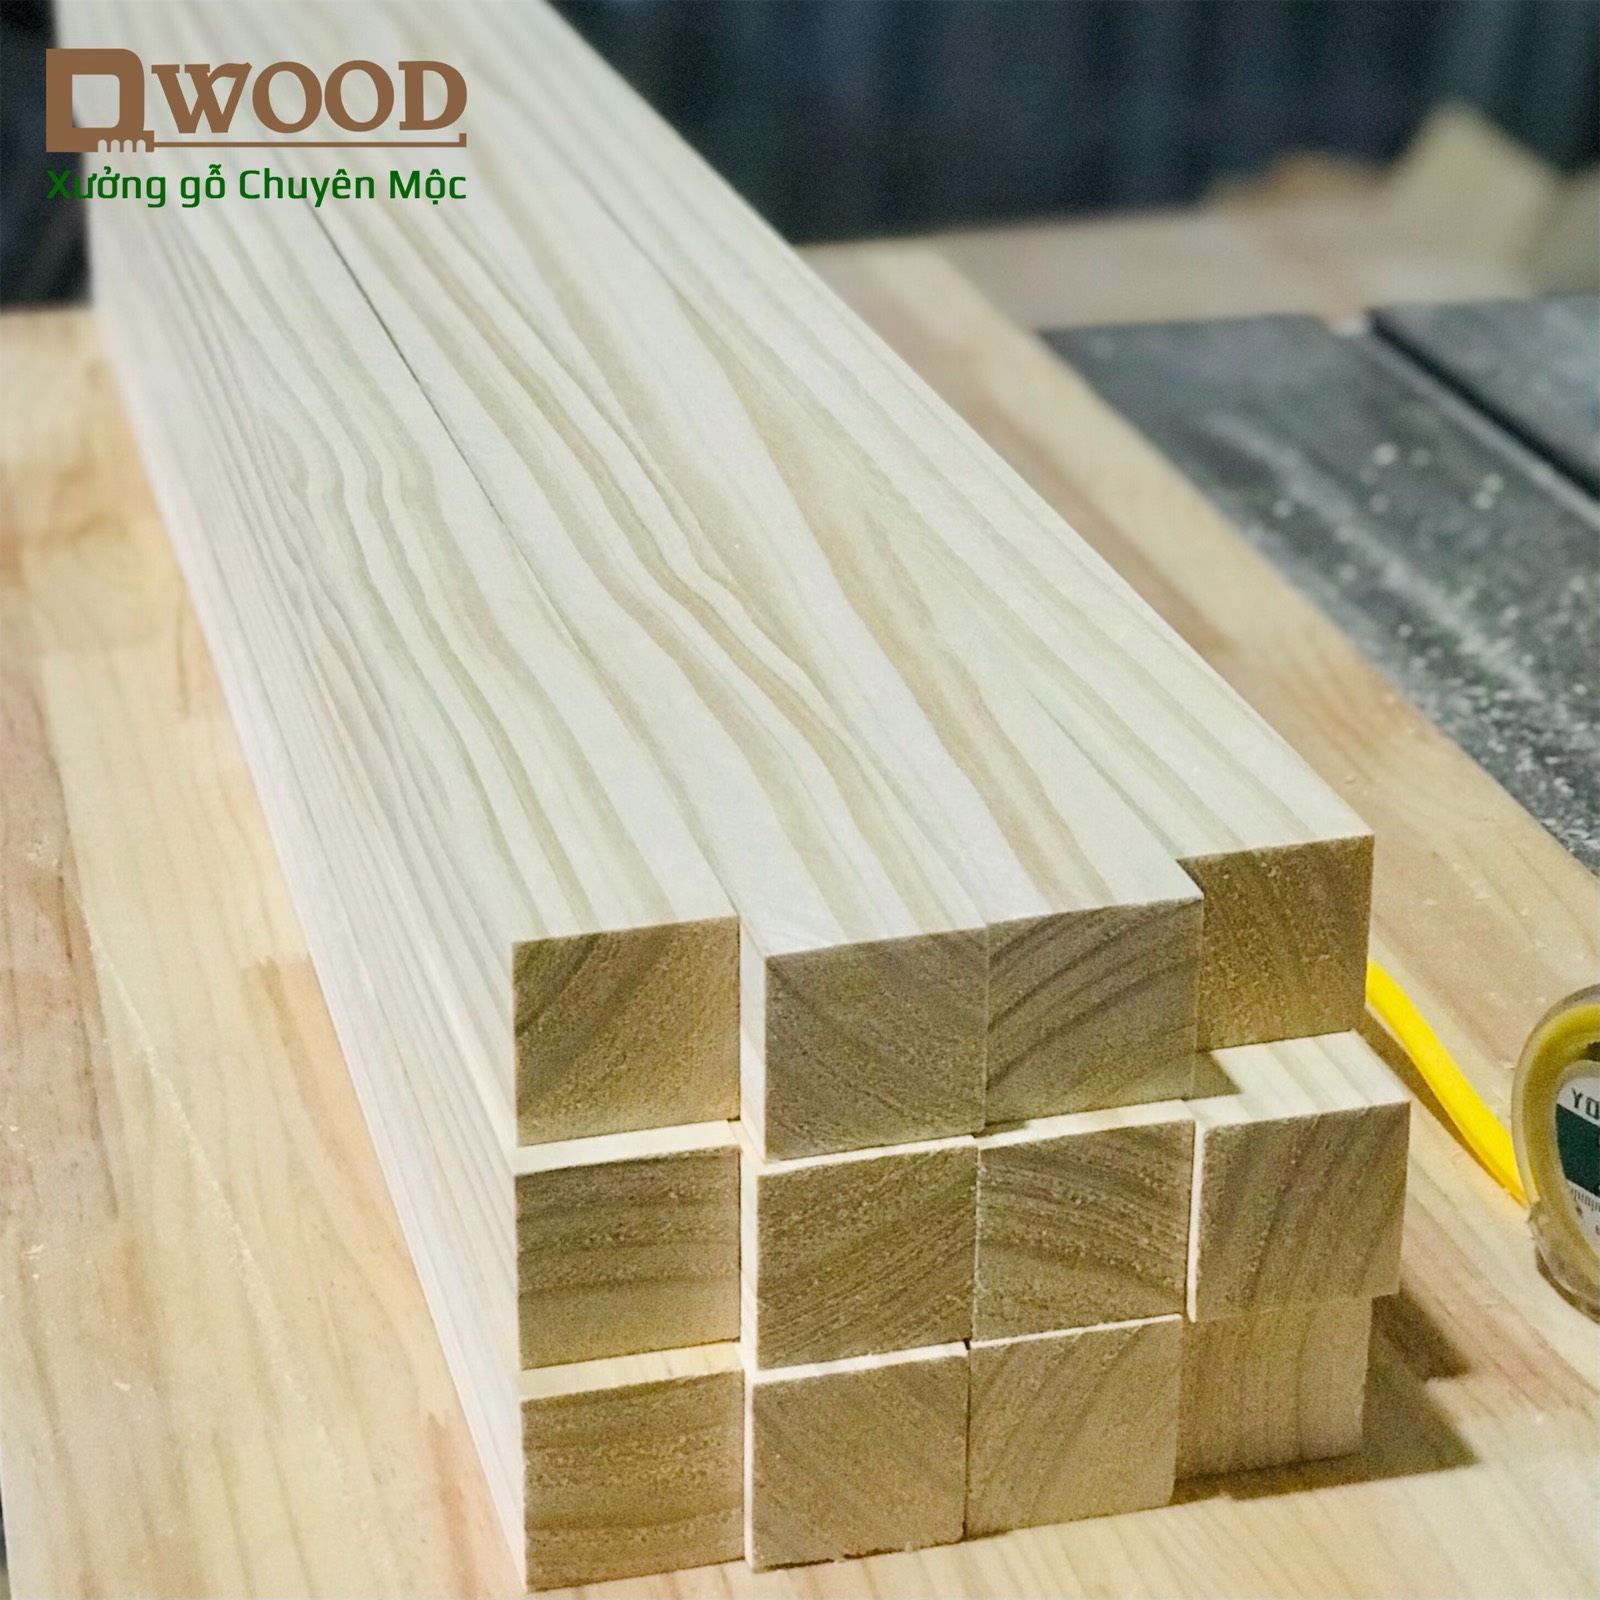 Thanh gỗ thông Dwood vuông 4x4 đã xử lý các mặt đẹp